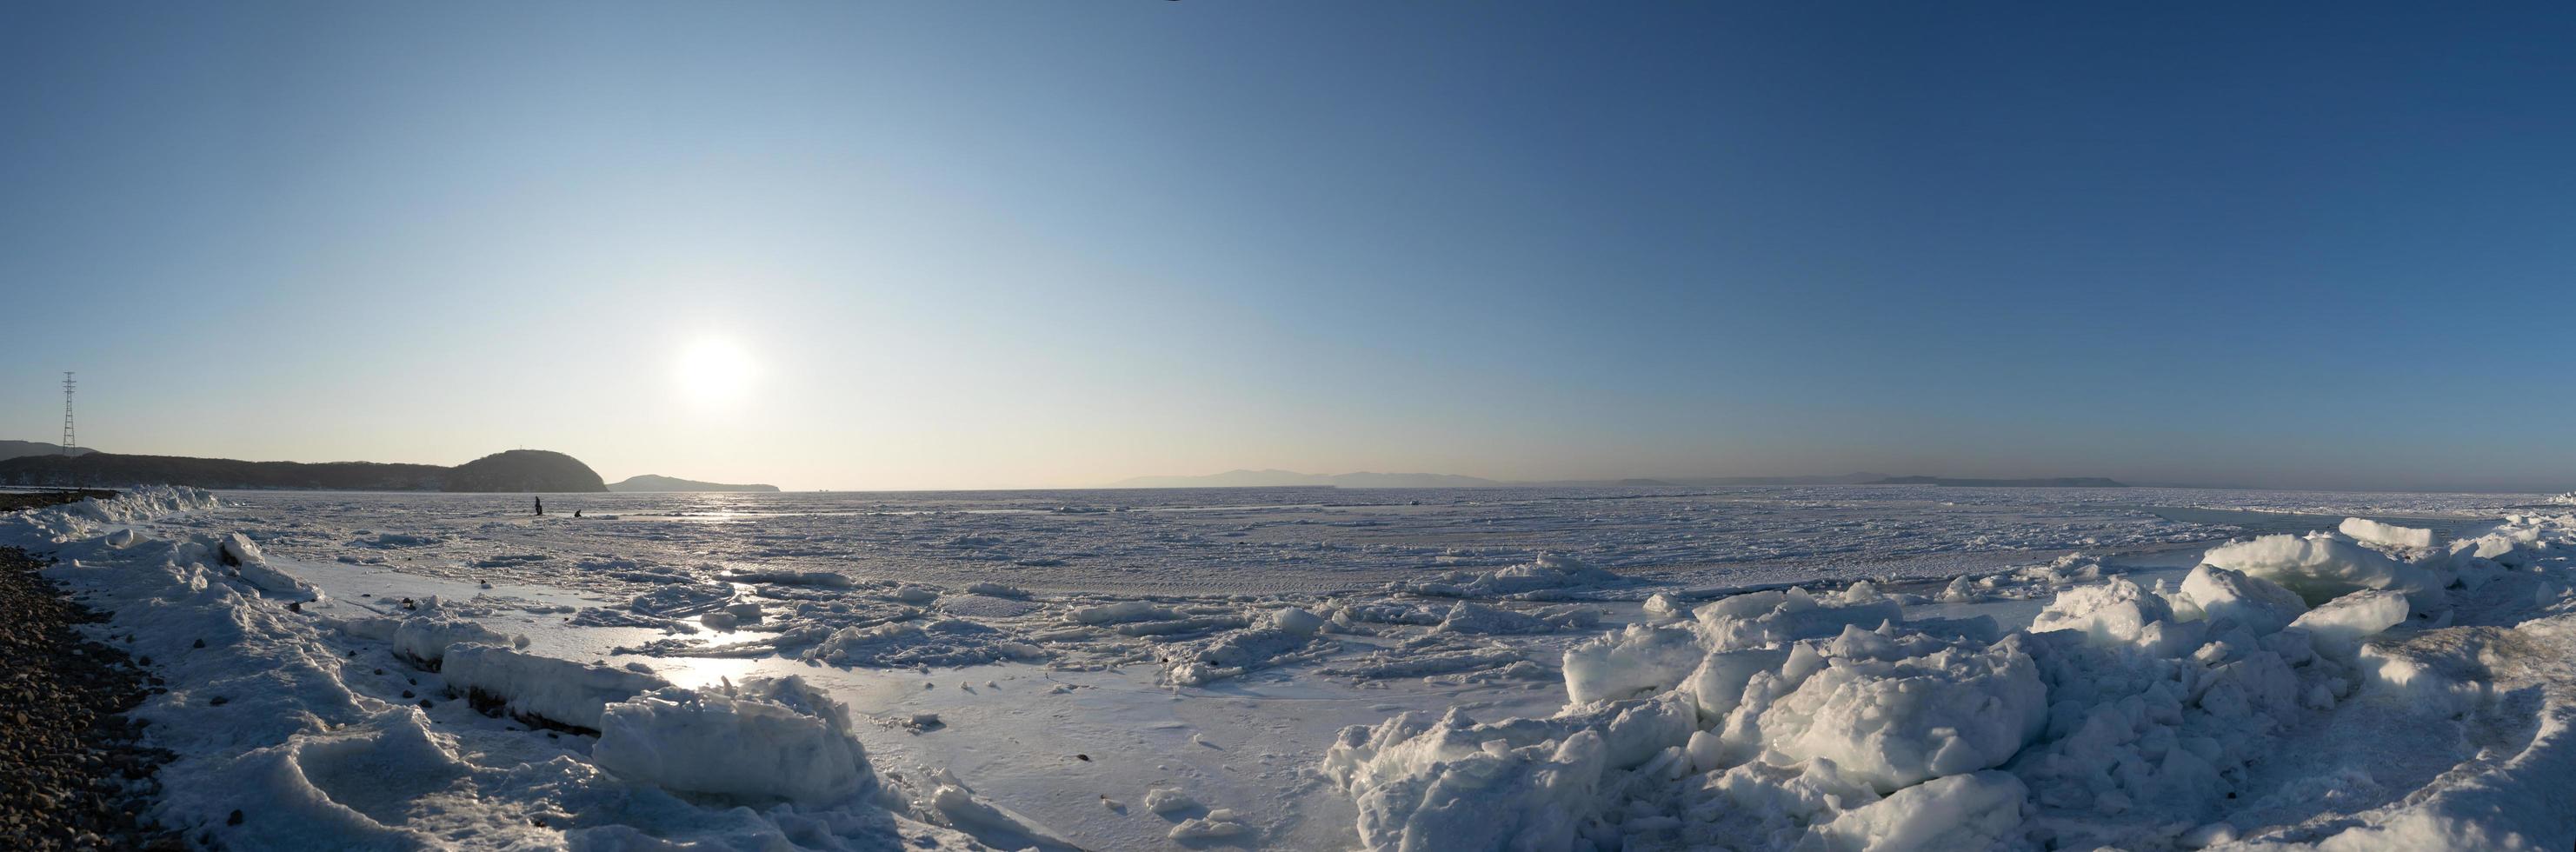 Panorama de la baie de l'Amour gelé avec de la neige et de la banquise à Vladivostok, Russie photo